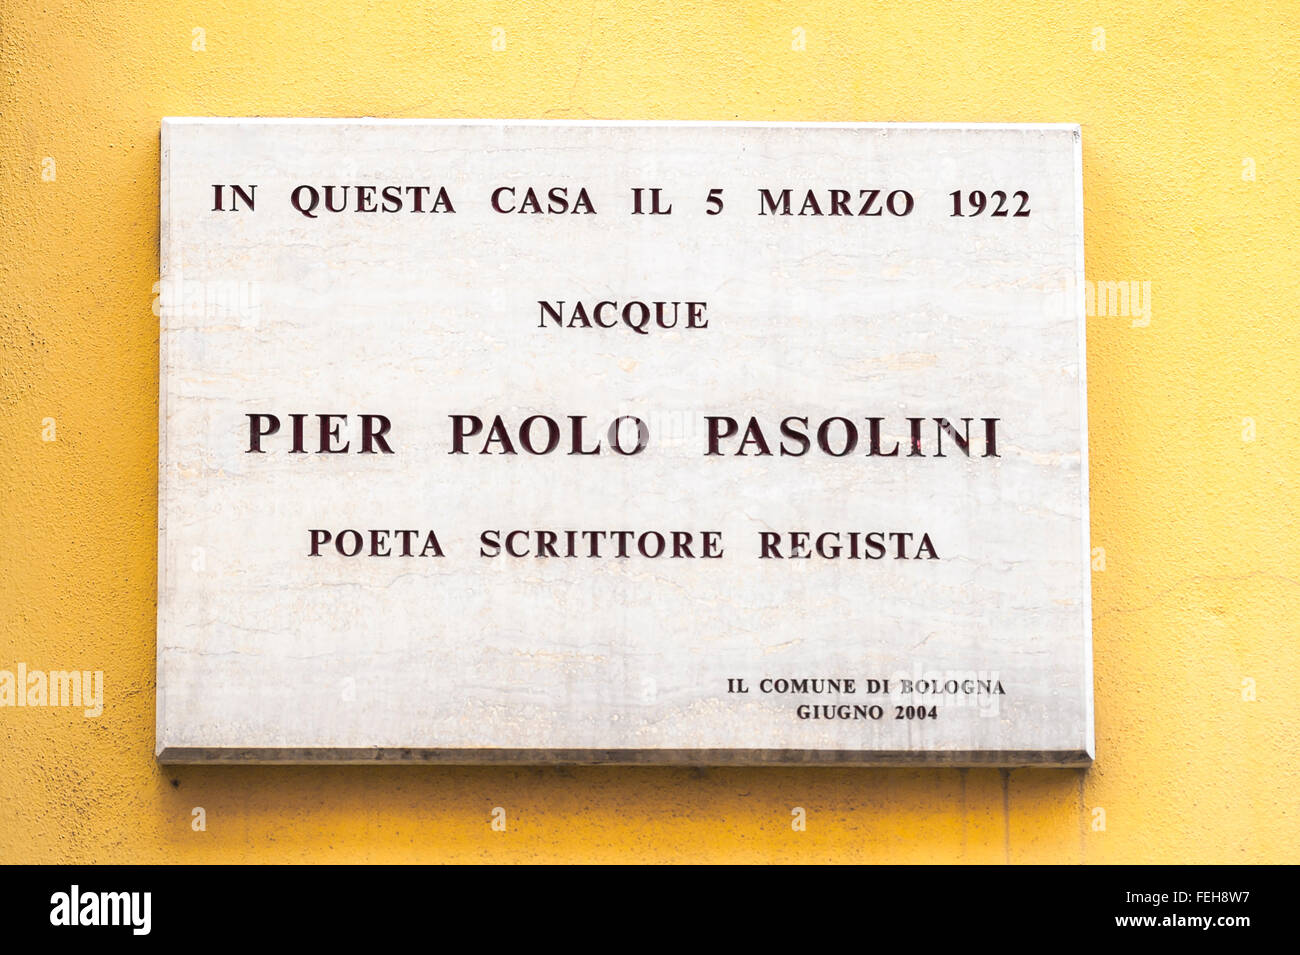 Pasolini Bologna Italien, Ansicht einer Wandtafel in Bologna, die den Geburtsort von Pier Paolo Pasolini, dem renommierten italienischen Regisseur, bezeichnet. Stockfoto